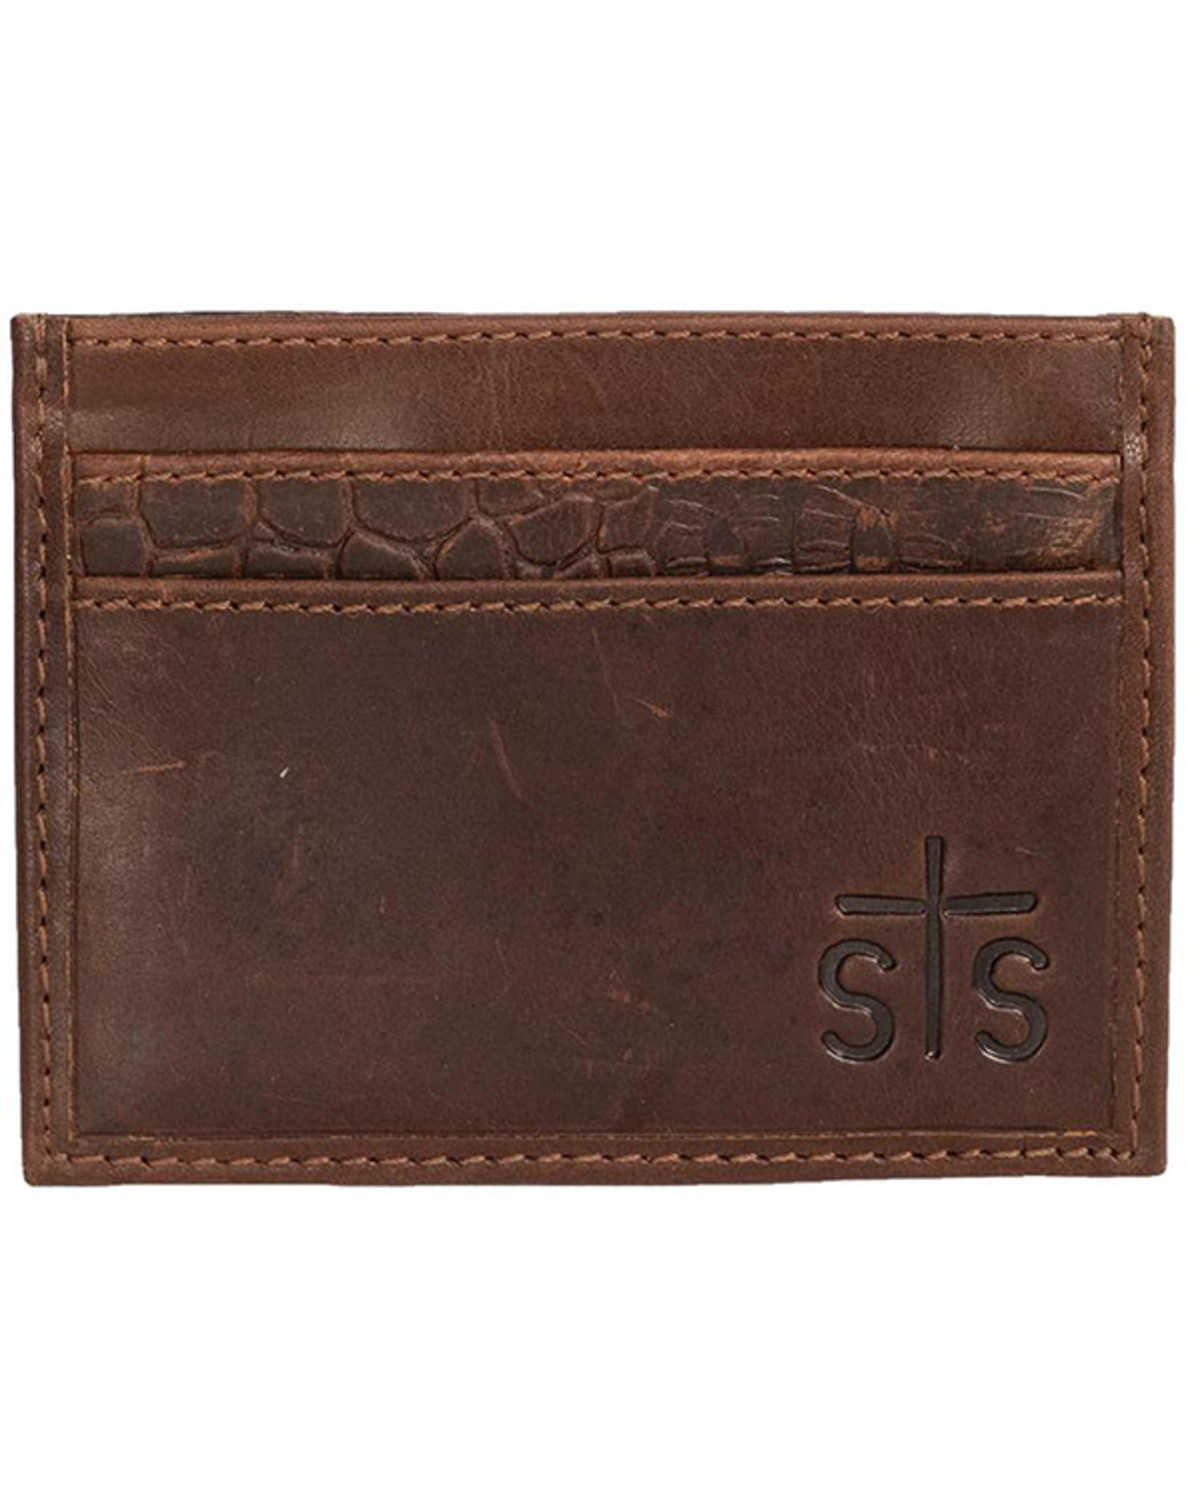 STS Ranchwear by Carroll Men's Croc Card Wallet